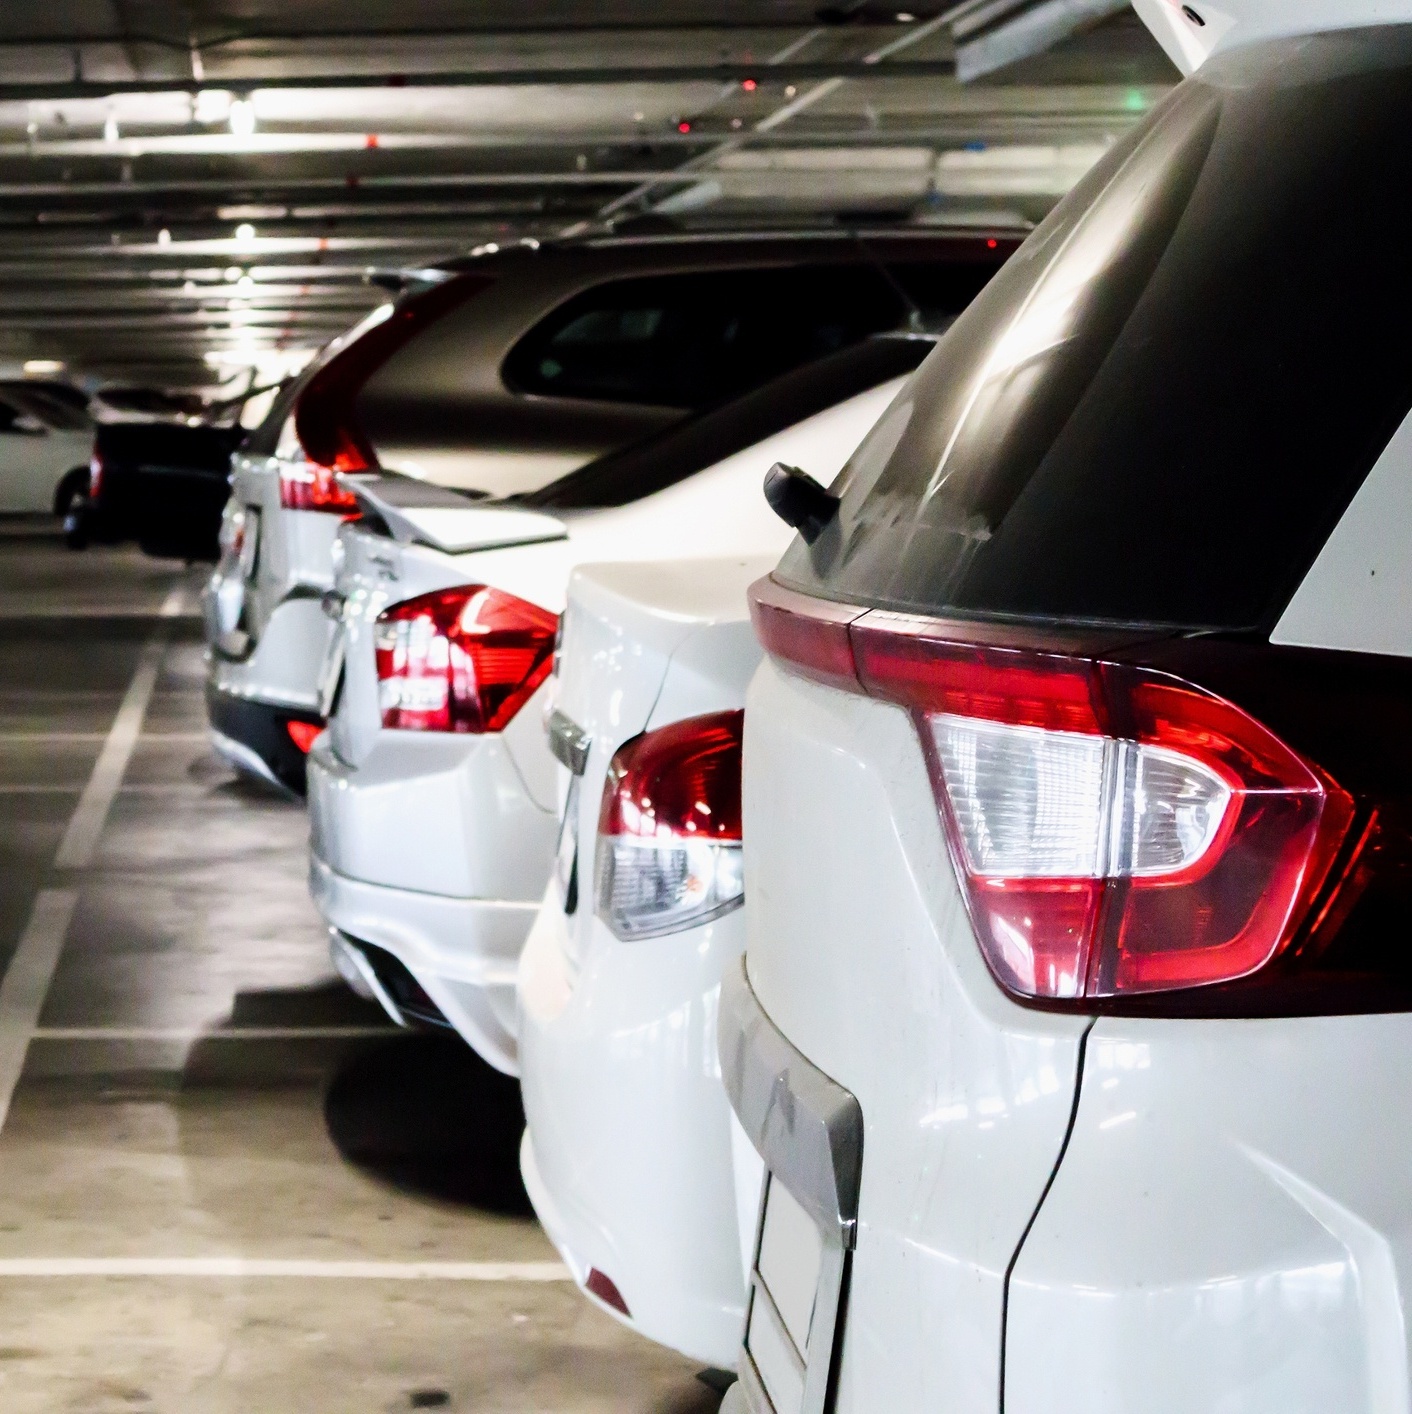 15 exemplos de como não estacionar o seu carro - Mega Curioso